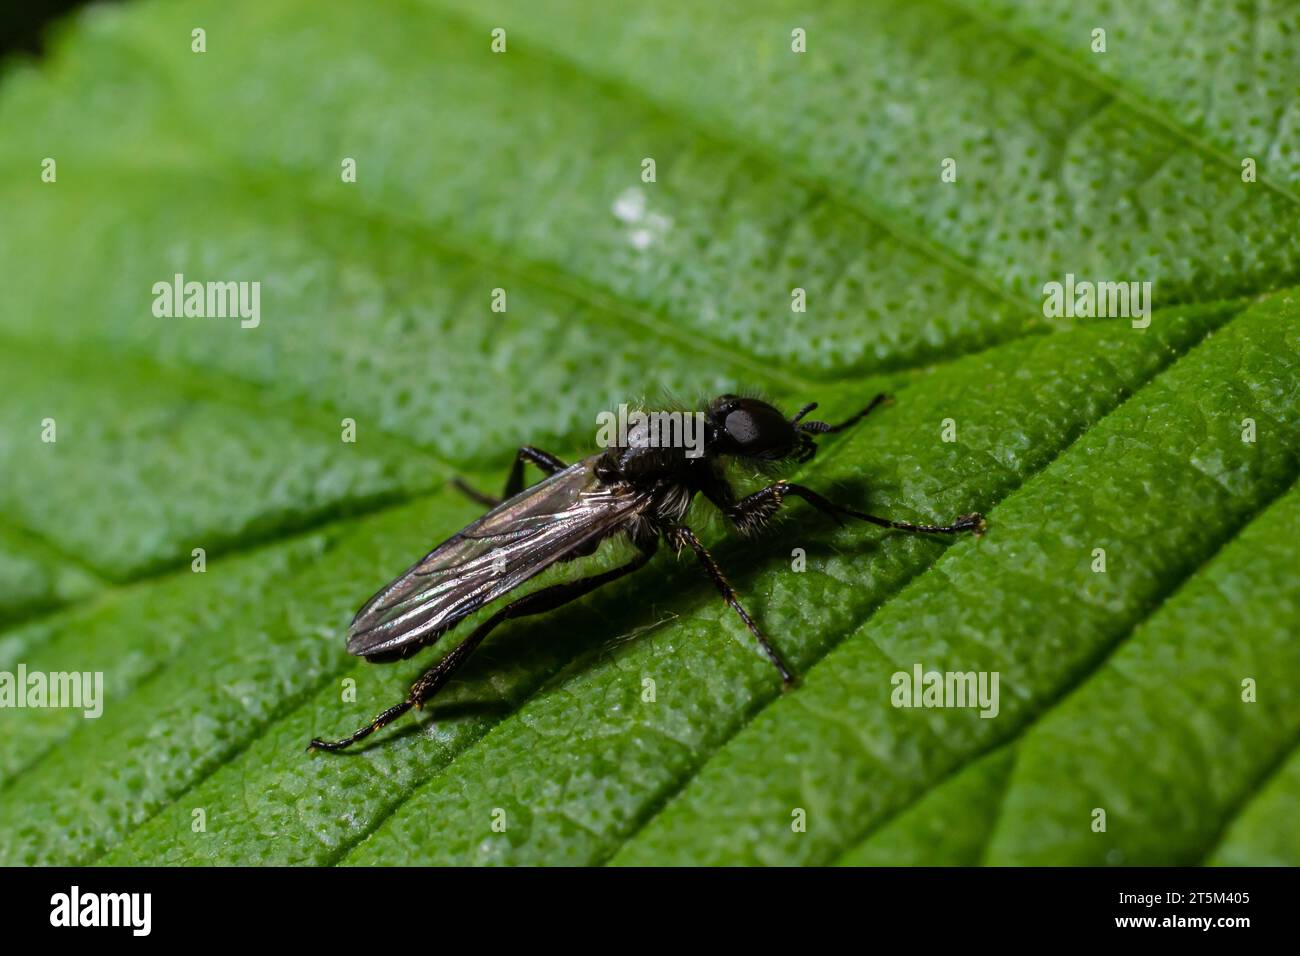 Aquilegia sawfly chiamato anche columbine sawfly Pristiphora rufipes. Comune peste di ribes e uva spina in giardini e piantagioni coltivate. Foto Stock